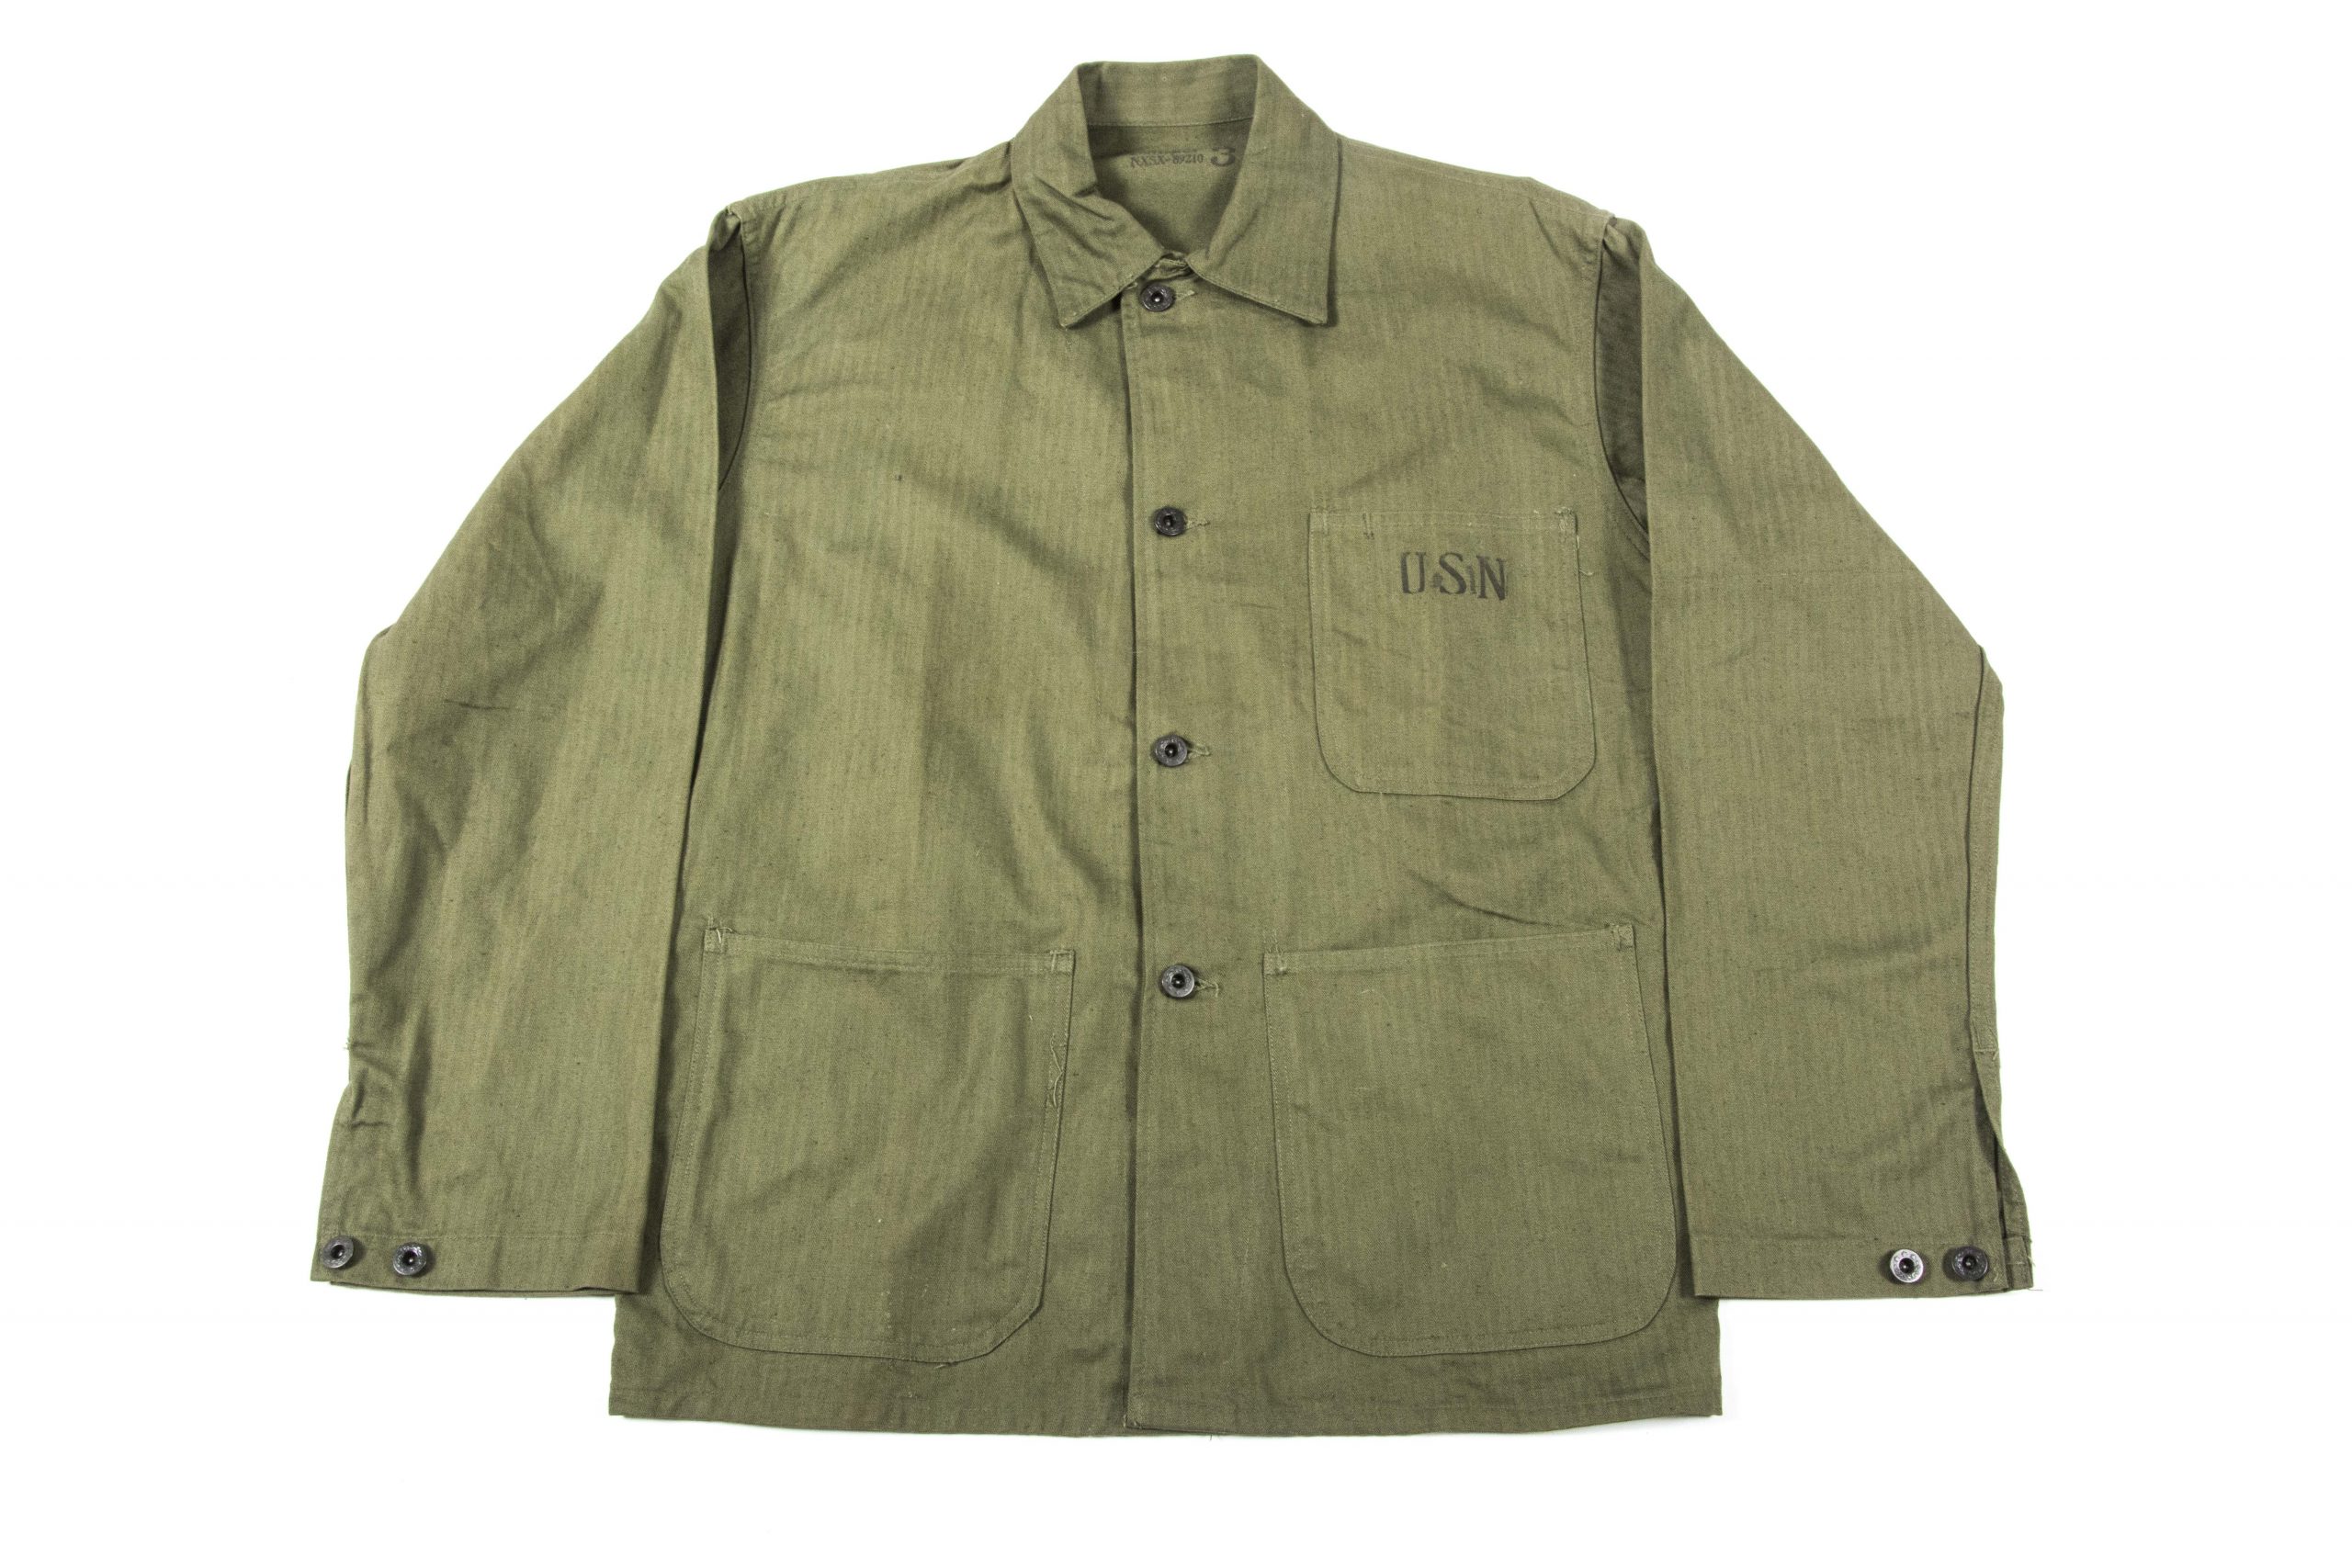 US Navy HBT jacket size 36 – fjm44